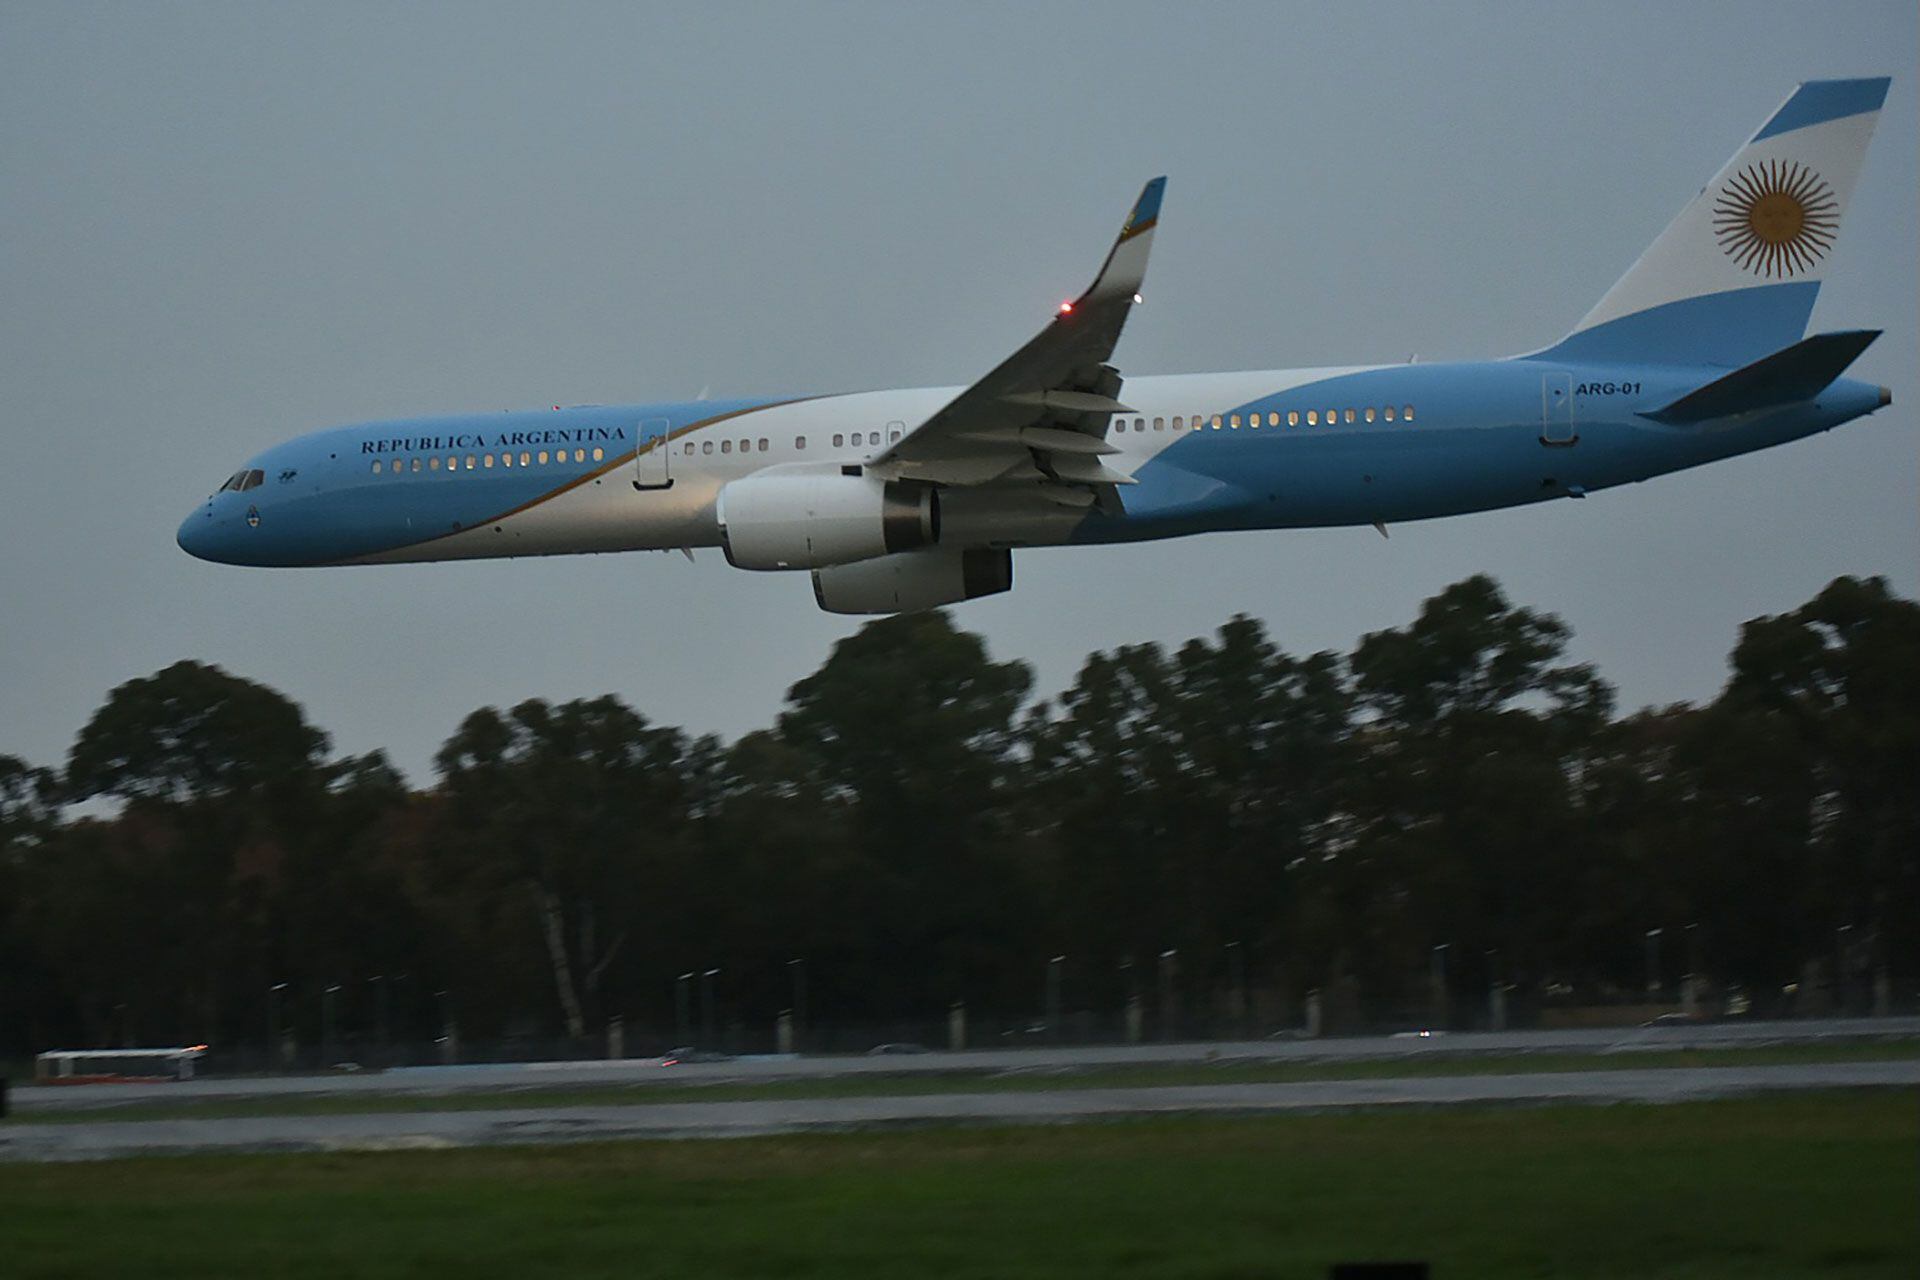 El nuevo avión presidencial argentino ARG-01 que voló a China con una comitiva de 35 personas (Infobae)